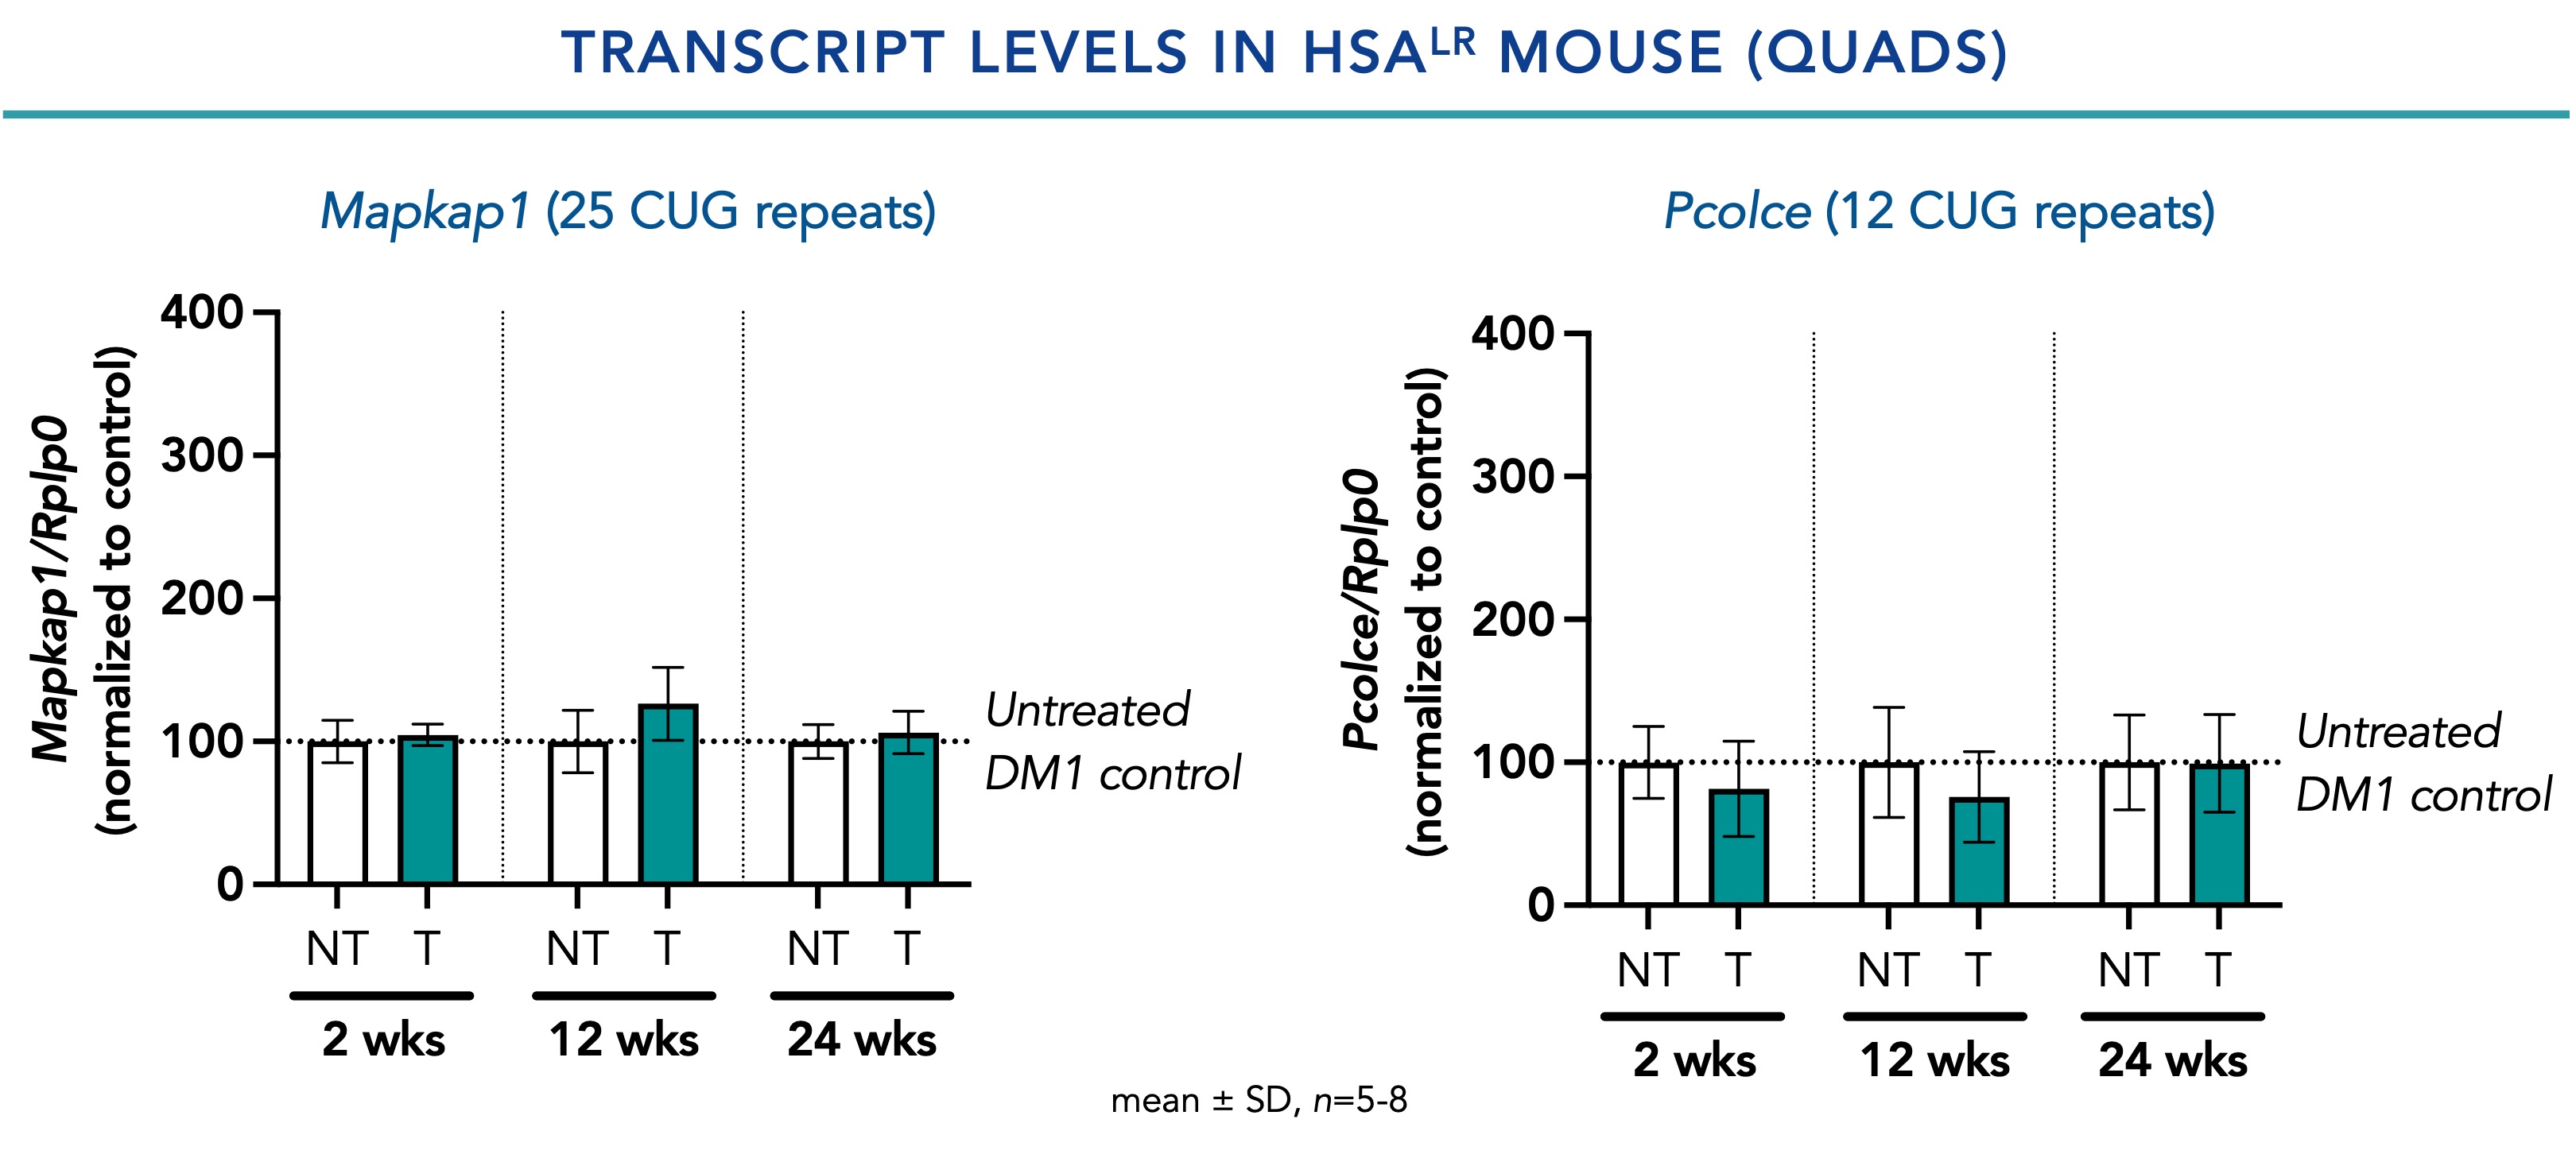 Transcript Levels in HSALR Mouse (Quads)